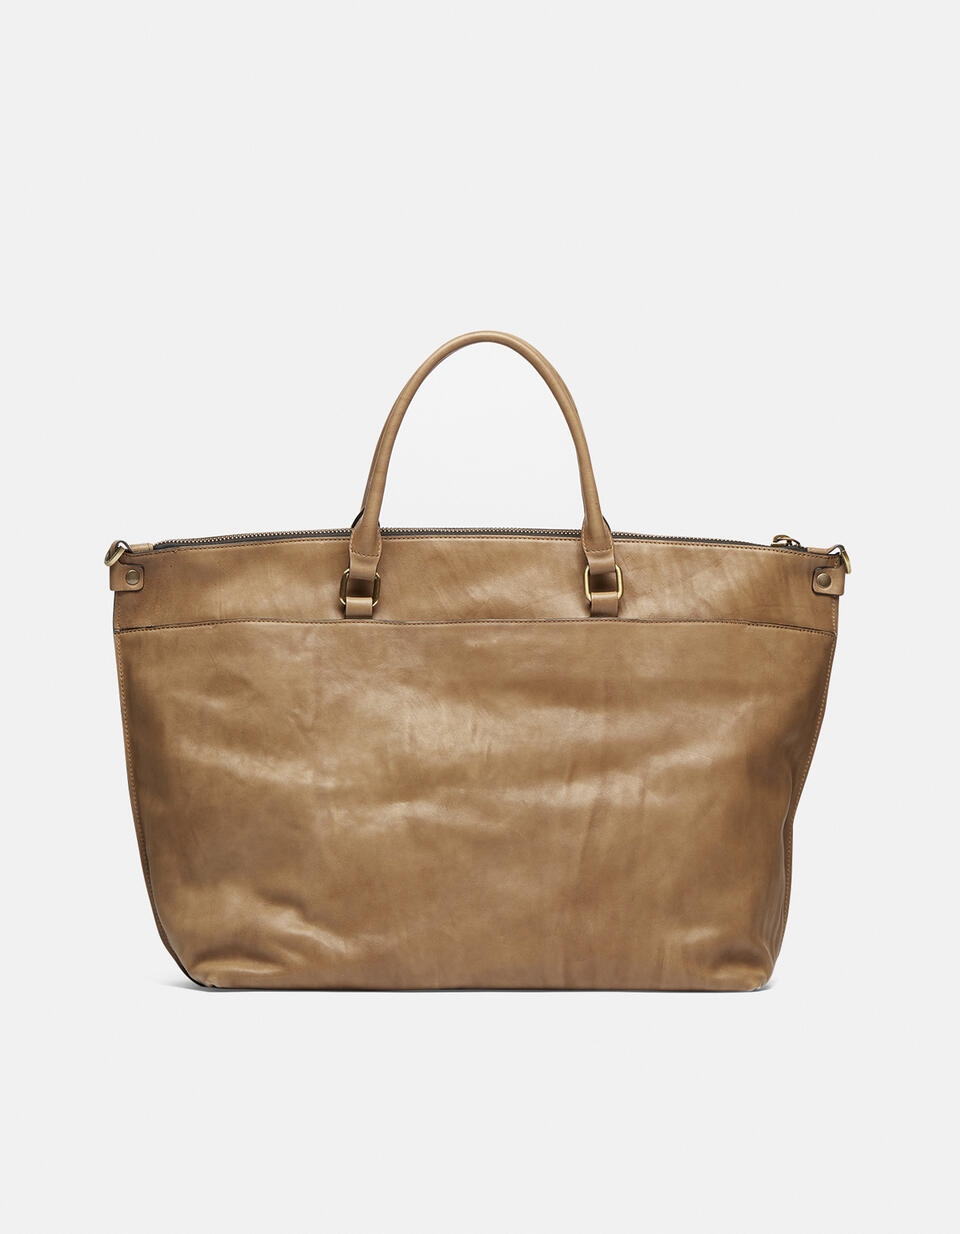 Safari Maxi tote bag in Delavé calfskin - TOTE BAG - WOMEN'S BAGS | bags  - TOTE BAG - WOMEN'S BAGS | bagsCuoieria Fiorentina